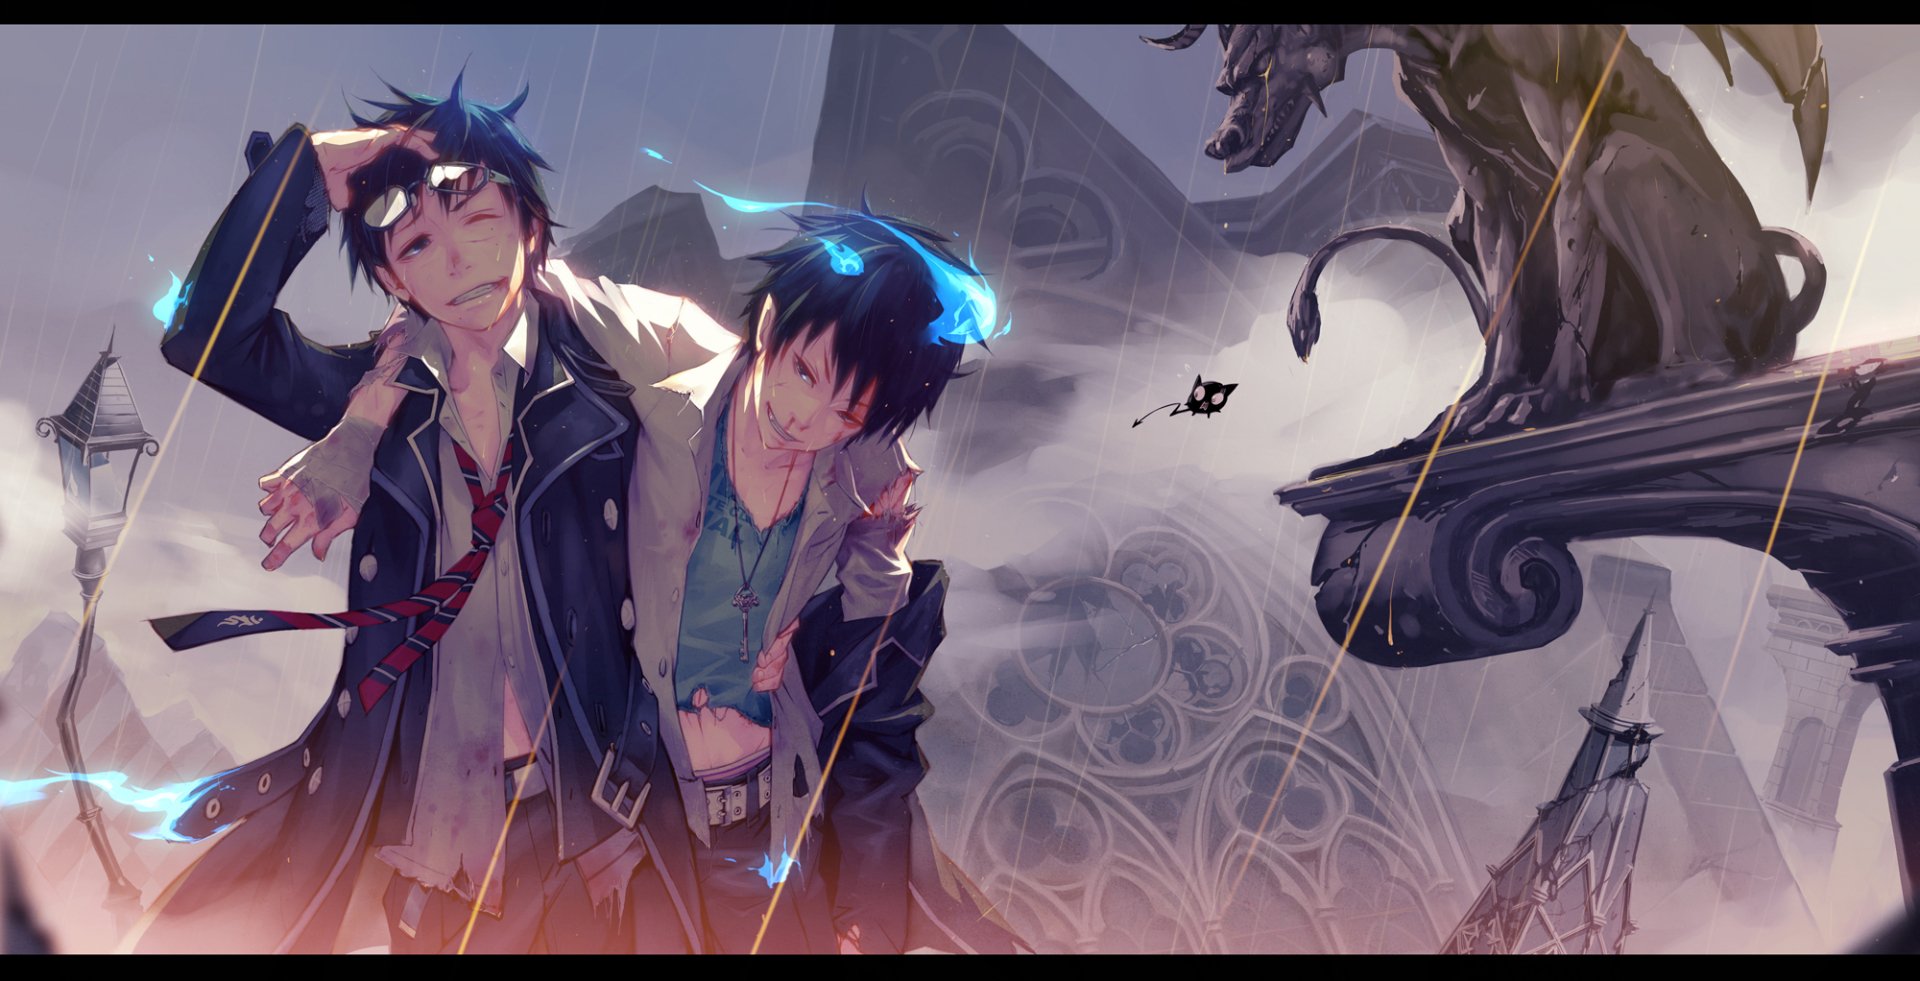 Rin and Yukio Okumura Wallpaper and Background Image ...